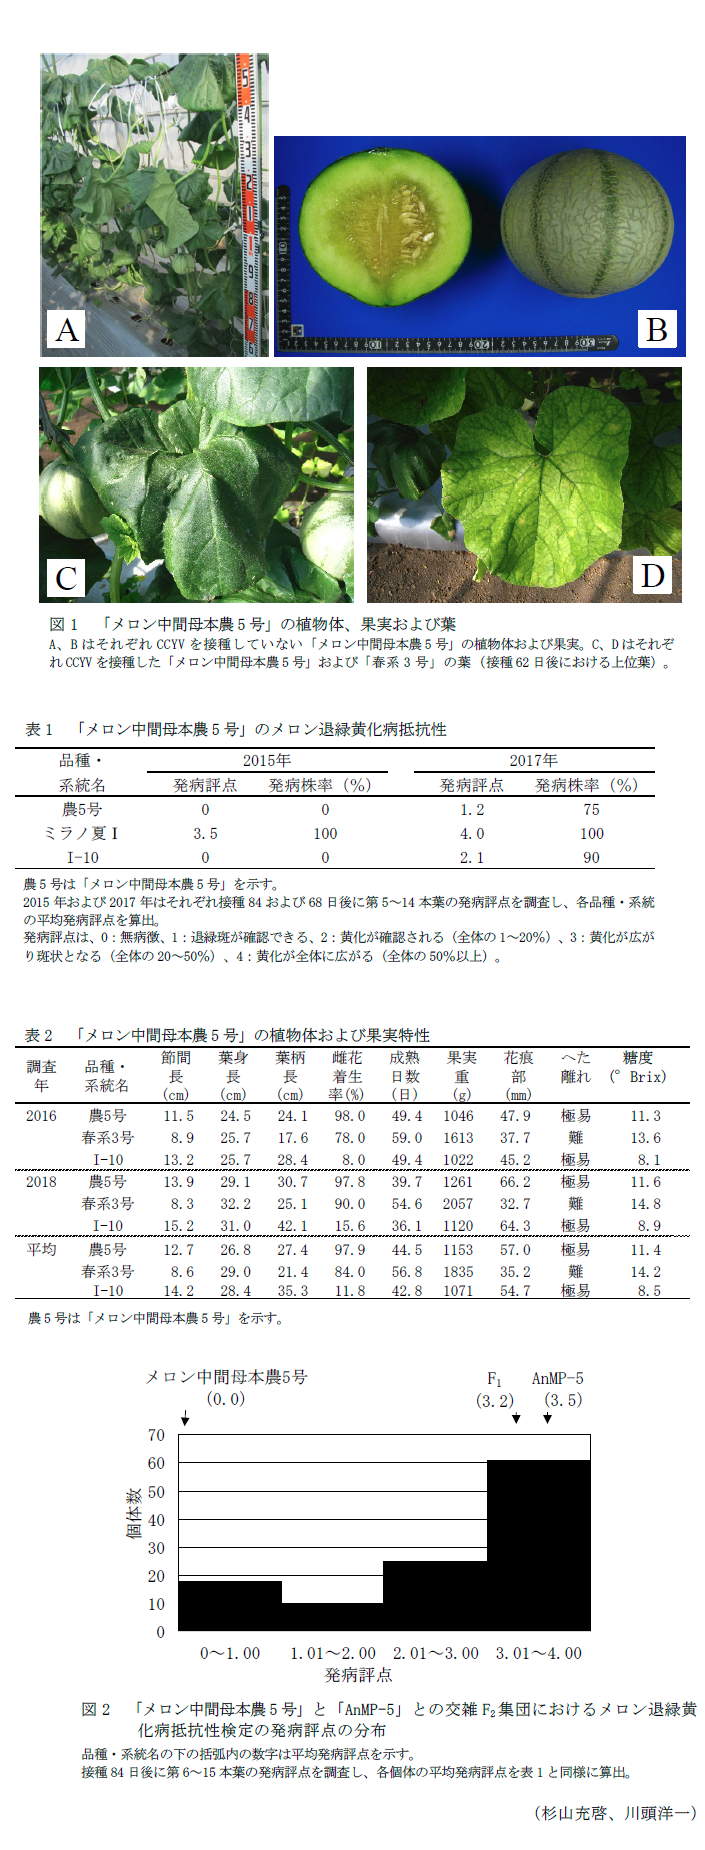 図1 「メロン中間母本農5号」の植物体、果実および葉,表1 「メロン中間母本農5号」のメロン退緑黄化病抵抗性,表2 「メロン中間母本農5号」の植物体および果実特性,図2 「メロン中間母本農5号」と「AnMP-5」との交雑F2集団におけるメロン退緑黄化病抵抗性検定の発病評点の分布